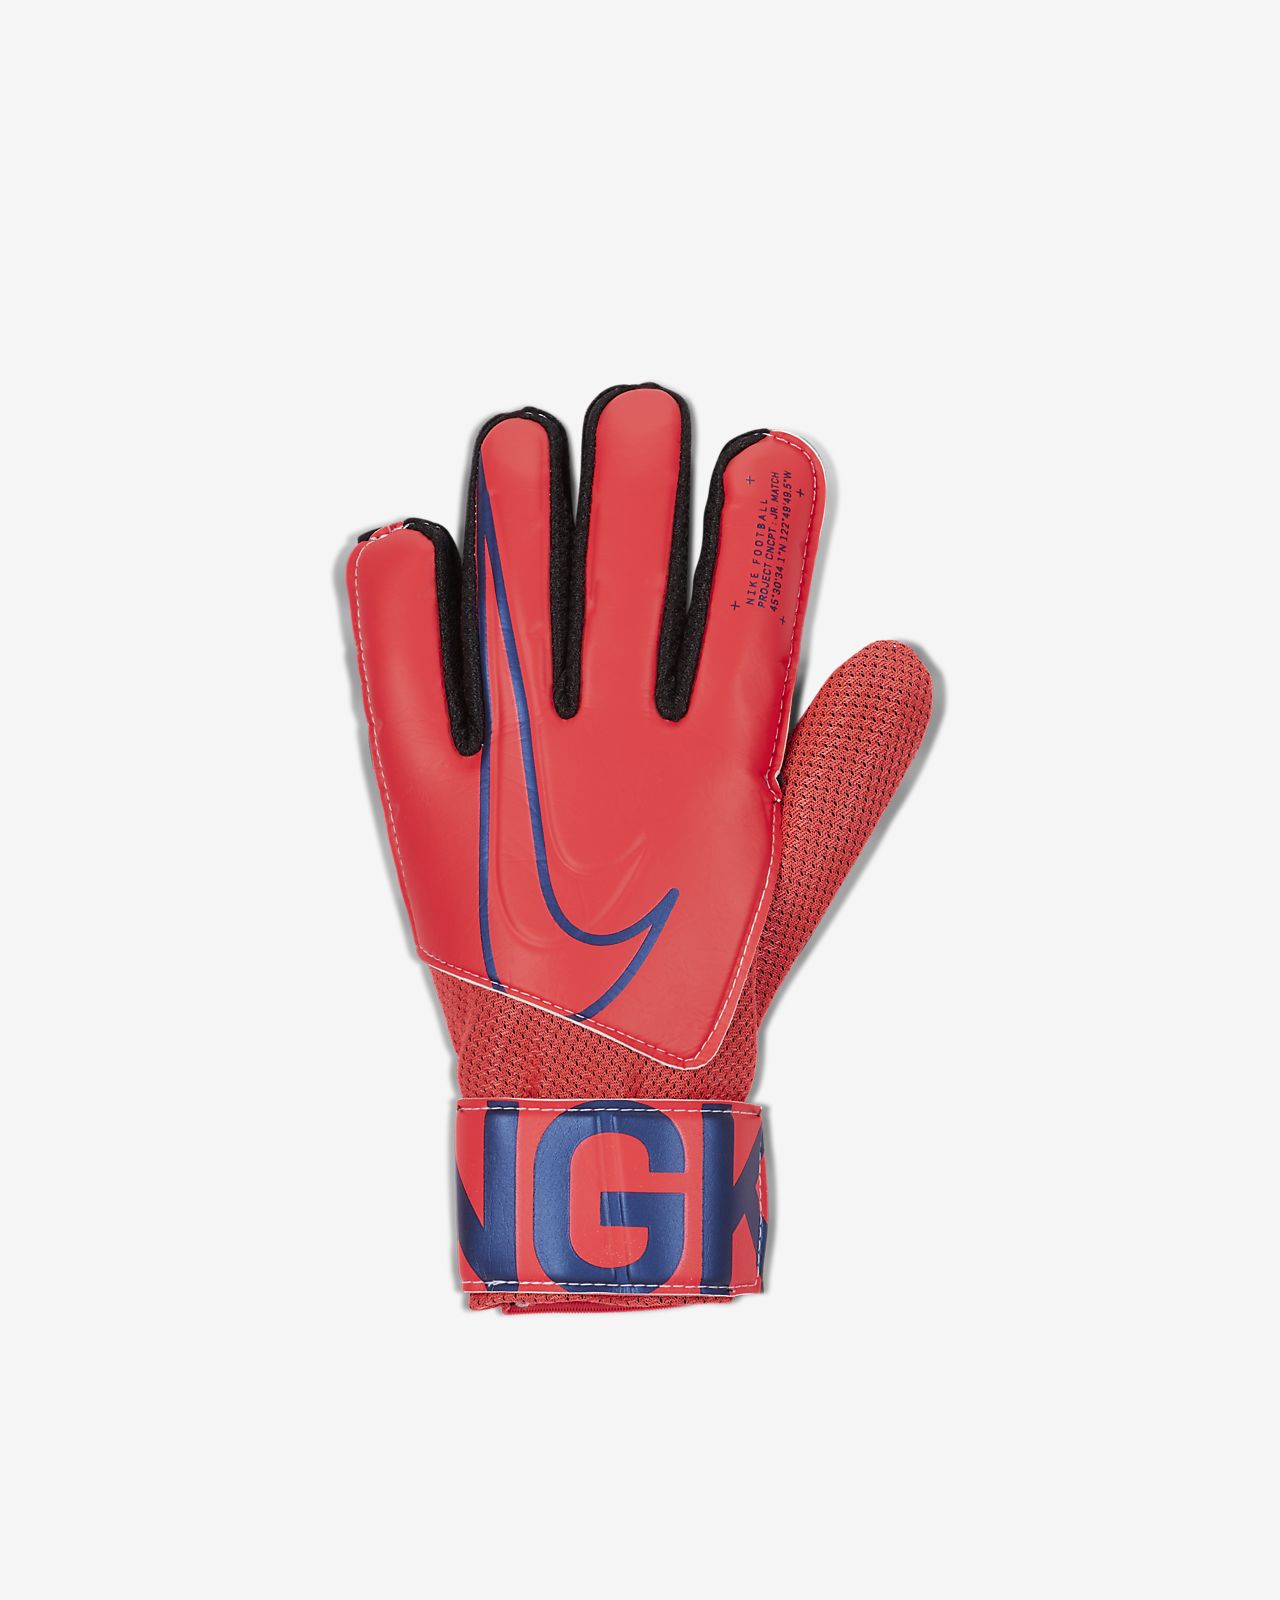 New Football Goalkeeper Goalie Soccer Gloves Kids child size 4 MAN UTD Color 